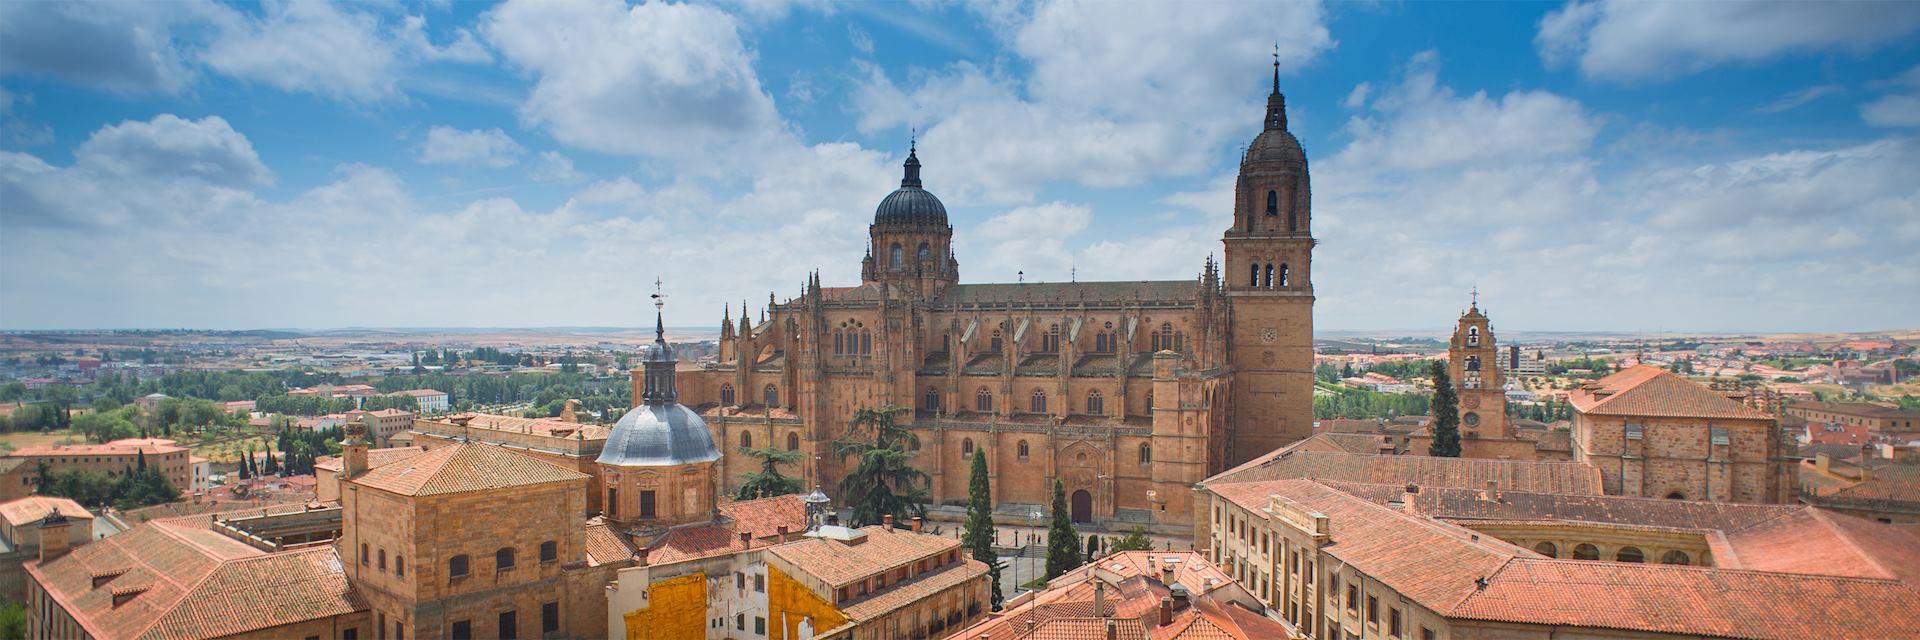 Salamanca skyline